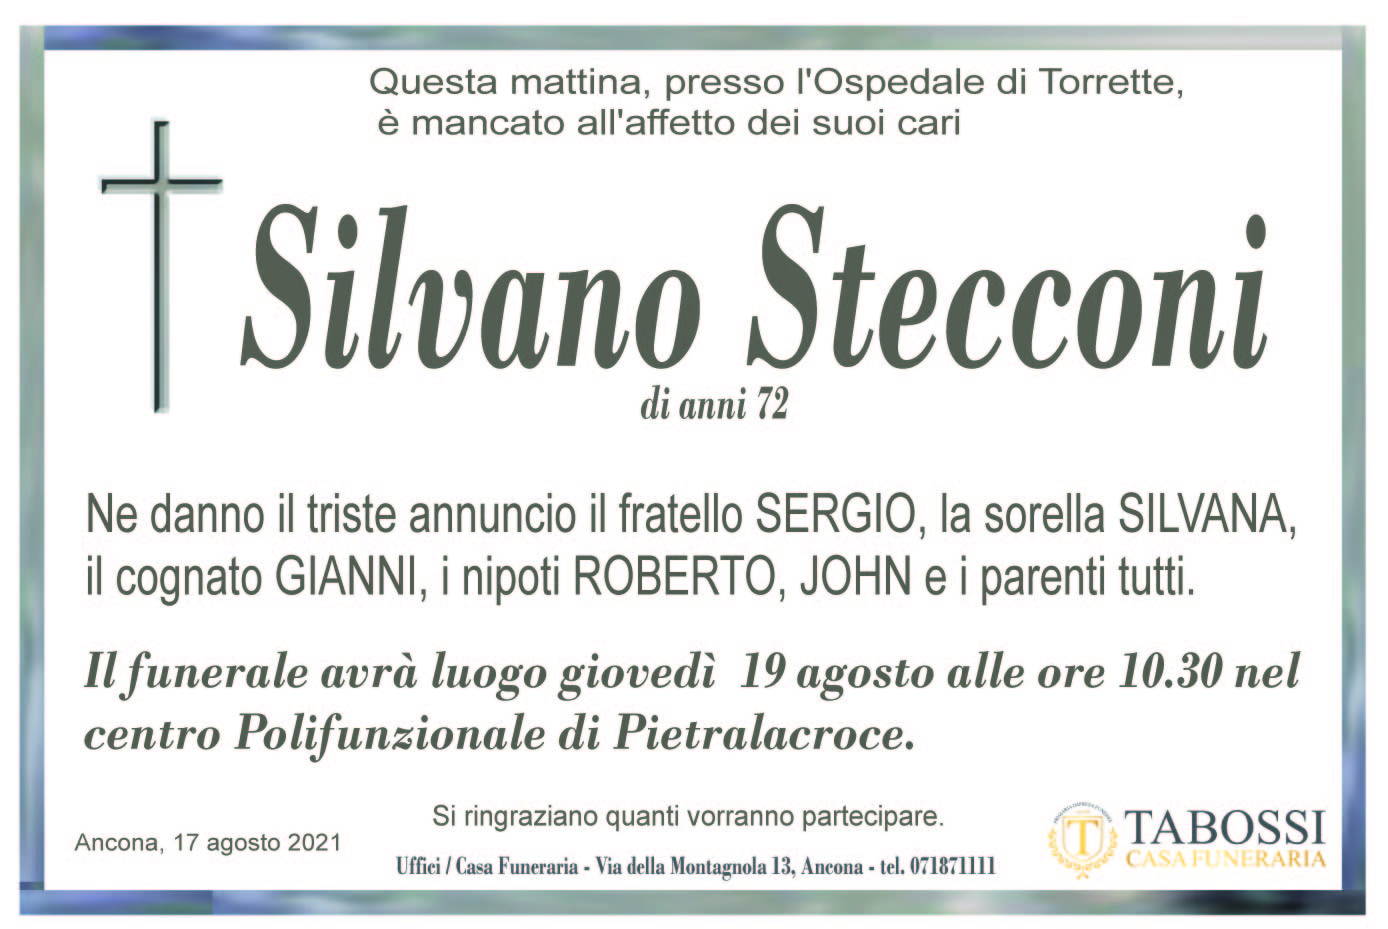 Silvano Stecconi